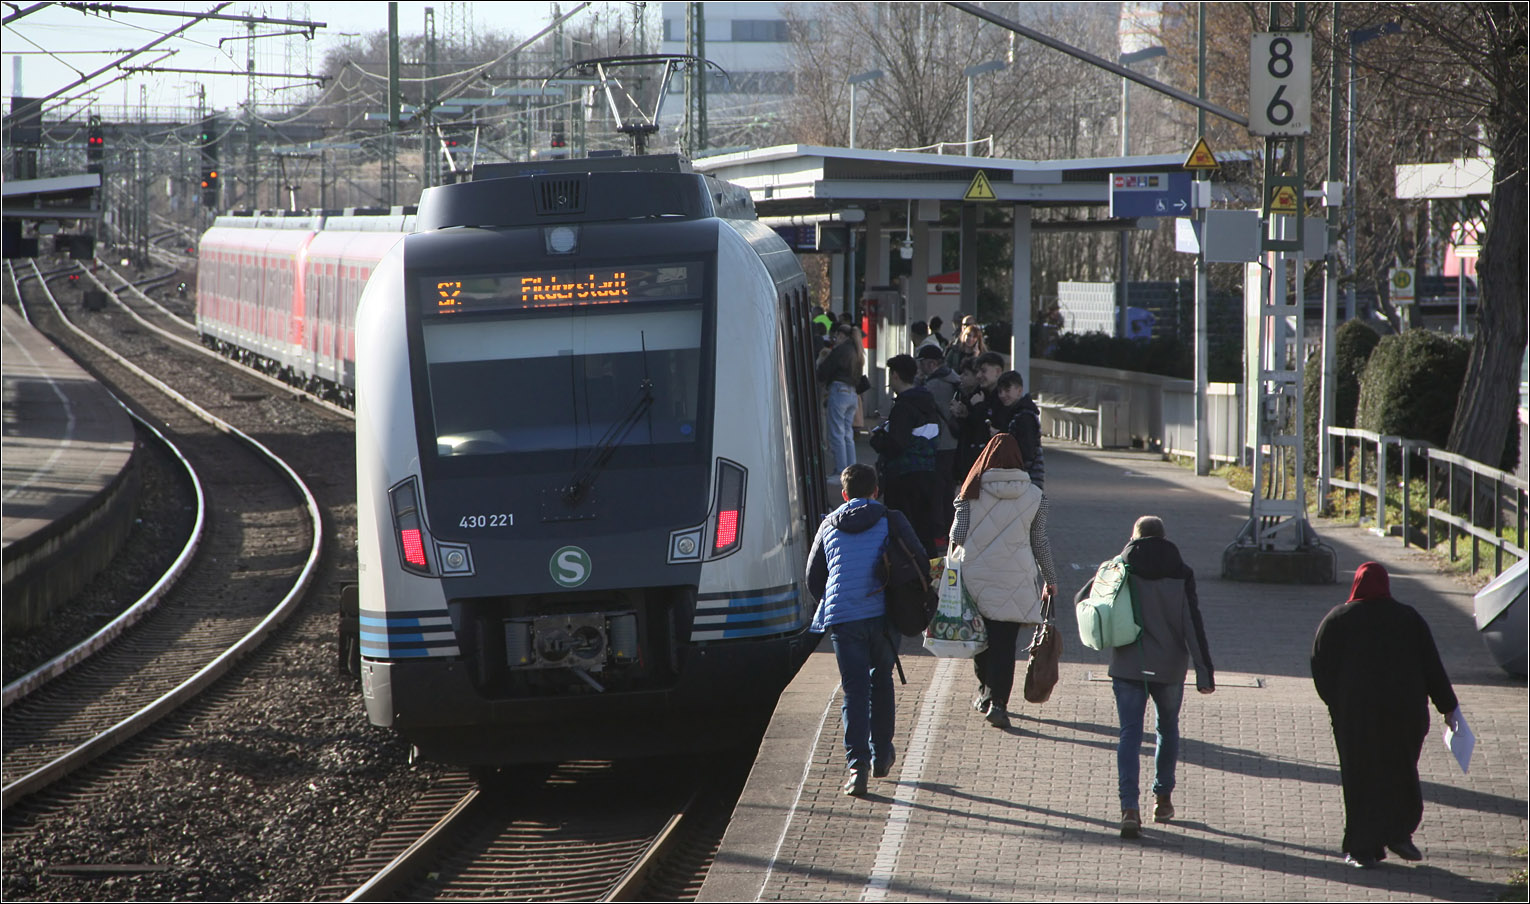 Ein S-Bahn-Langzug im Bahnhof Waiblingen -

Fahrgastwechsel eines S-Bahnzuges der Linie S2 an Bahnsteig 5 des Waiblinger Bahnhofes. Dieser Bahnsteig ist der einzige von fünf Bahnsteigkanten, wo barrierefrei in die S-Bahn eingestiegen werden kann. 
Die Remsbahn und Murrbahn vereinigen sich nach dem Bahnhof. Das Bahnhofsgebäude liegt im Winkel zwischen den beiden Strecken. Rechts kann man eine rote Lok der Baureihe 111 erahnen, die mit einem Ersatzzug der Murrbahn an Gleis 1 steht.

20.02.2023 (M)